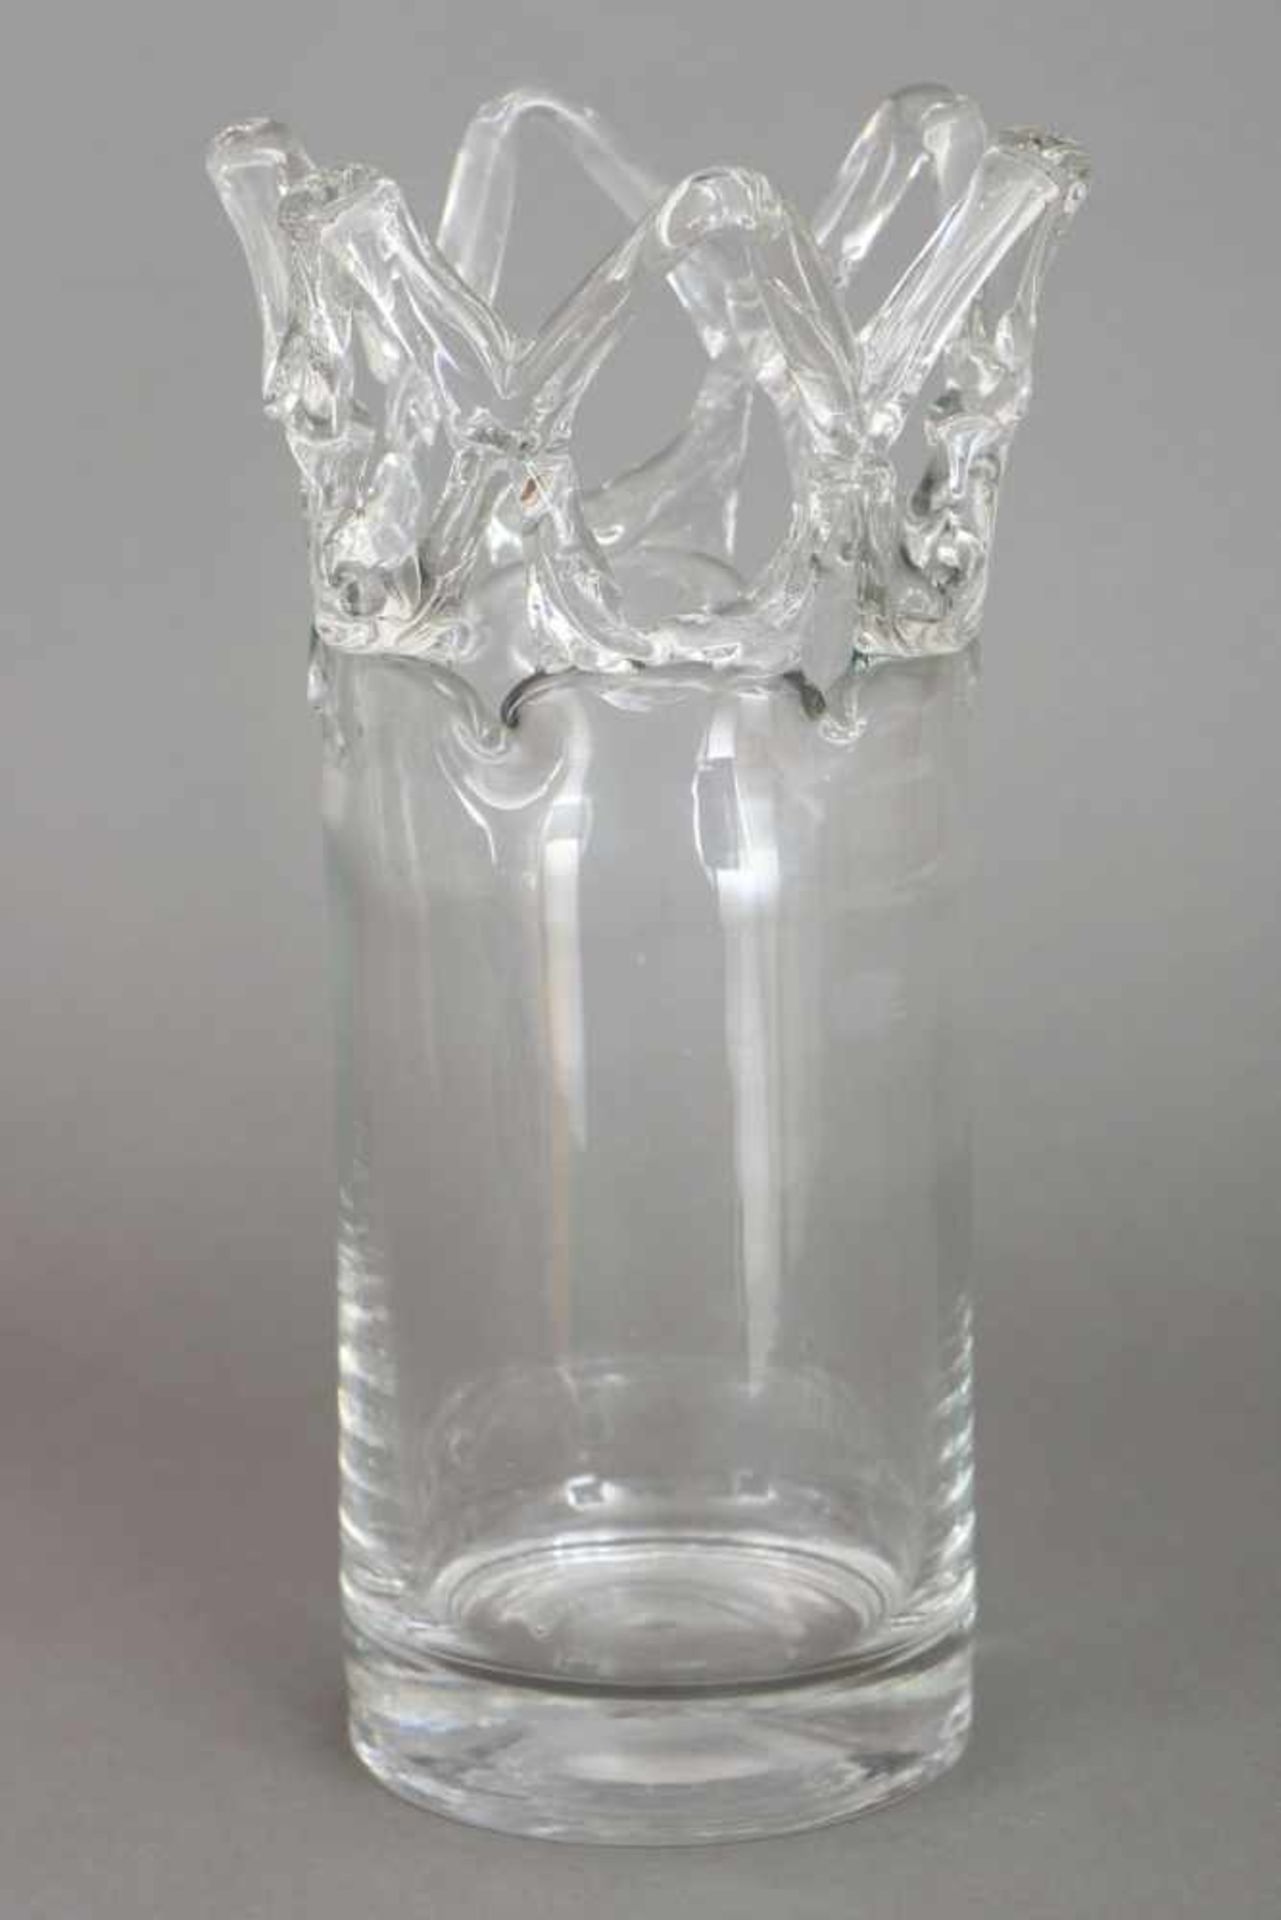 Wohl BOREK SIPEK Glasvasefarbloses Glas, zylindrischer Korpus, ¨Kronen¨-Abschluss (im Randbereich